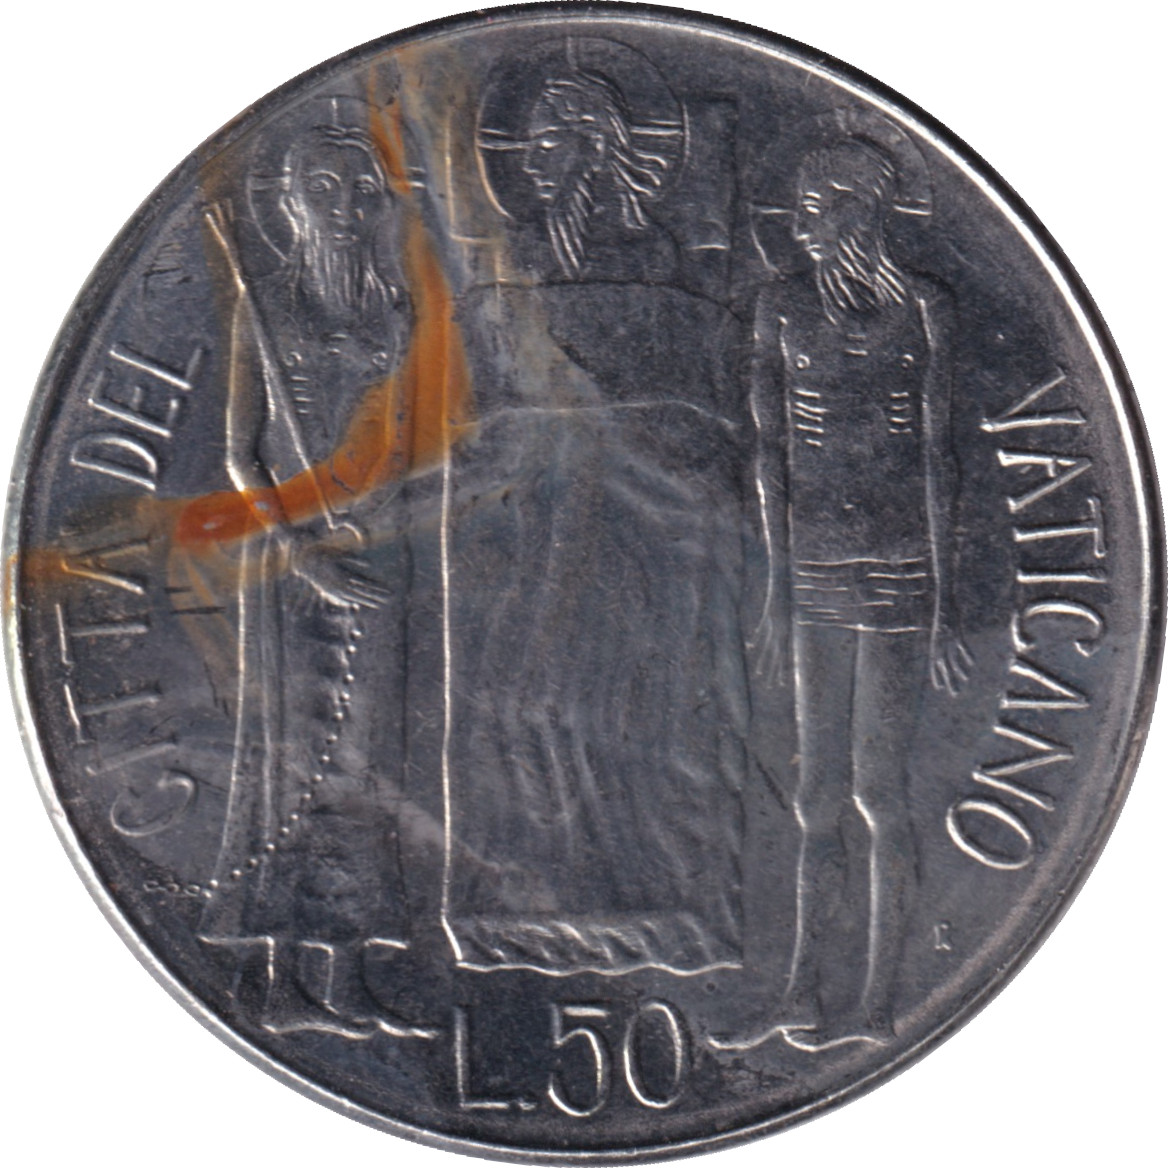 50 lire - John Paul II - Figures debout